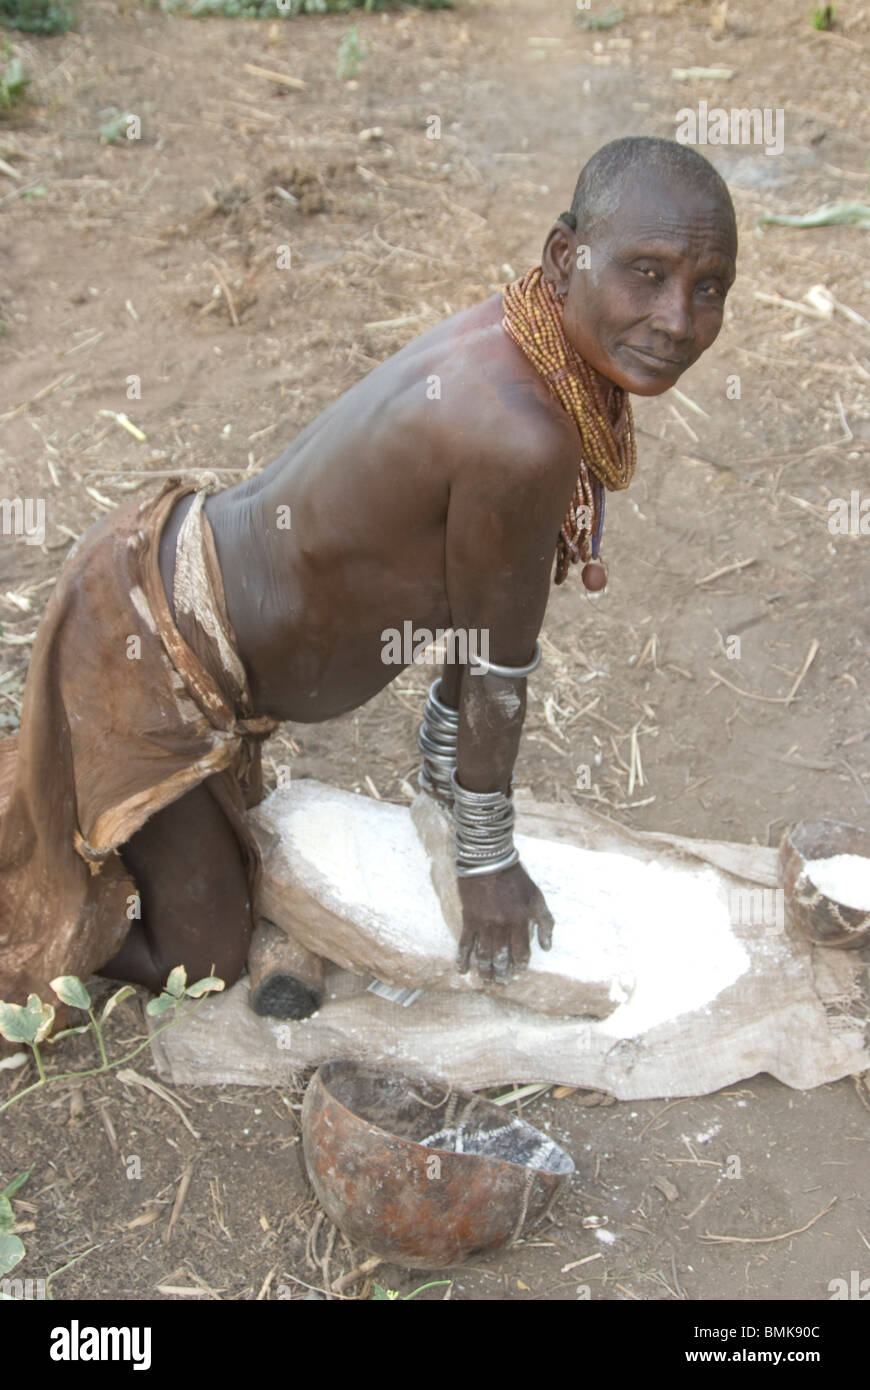 Ethiopia: Lower Omo River Basin, Chelete farms for Karo, woman grinding grain Stock Photo